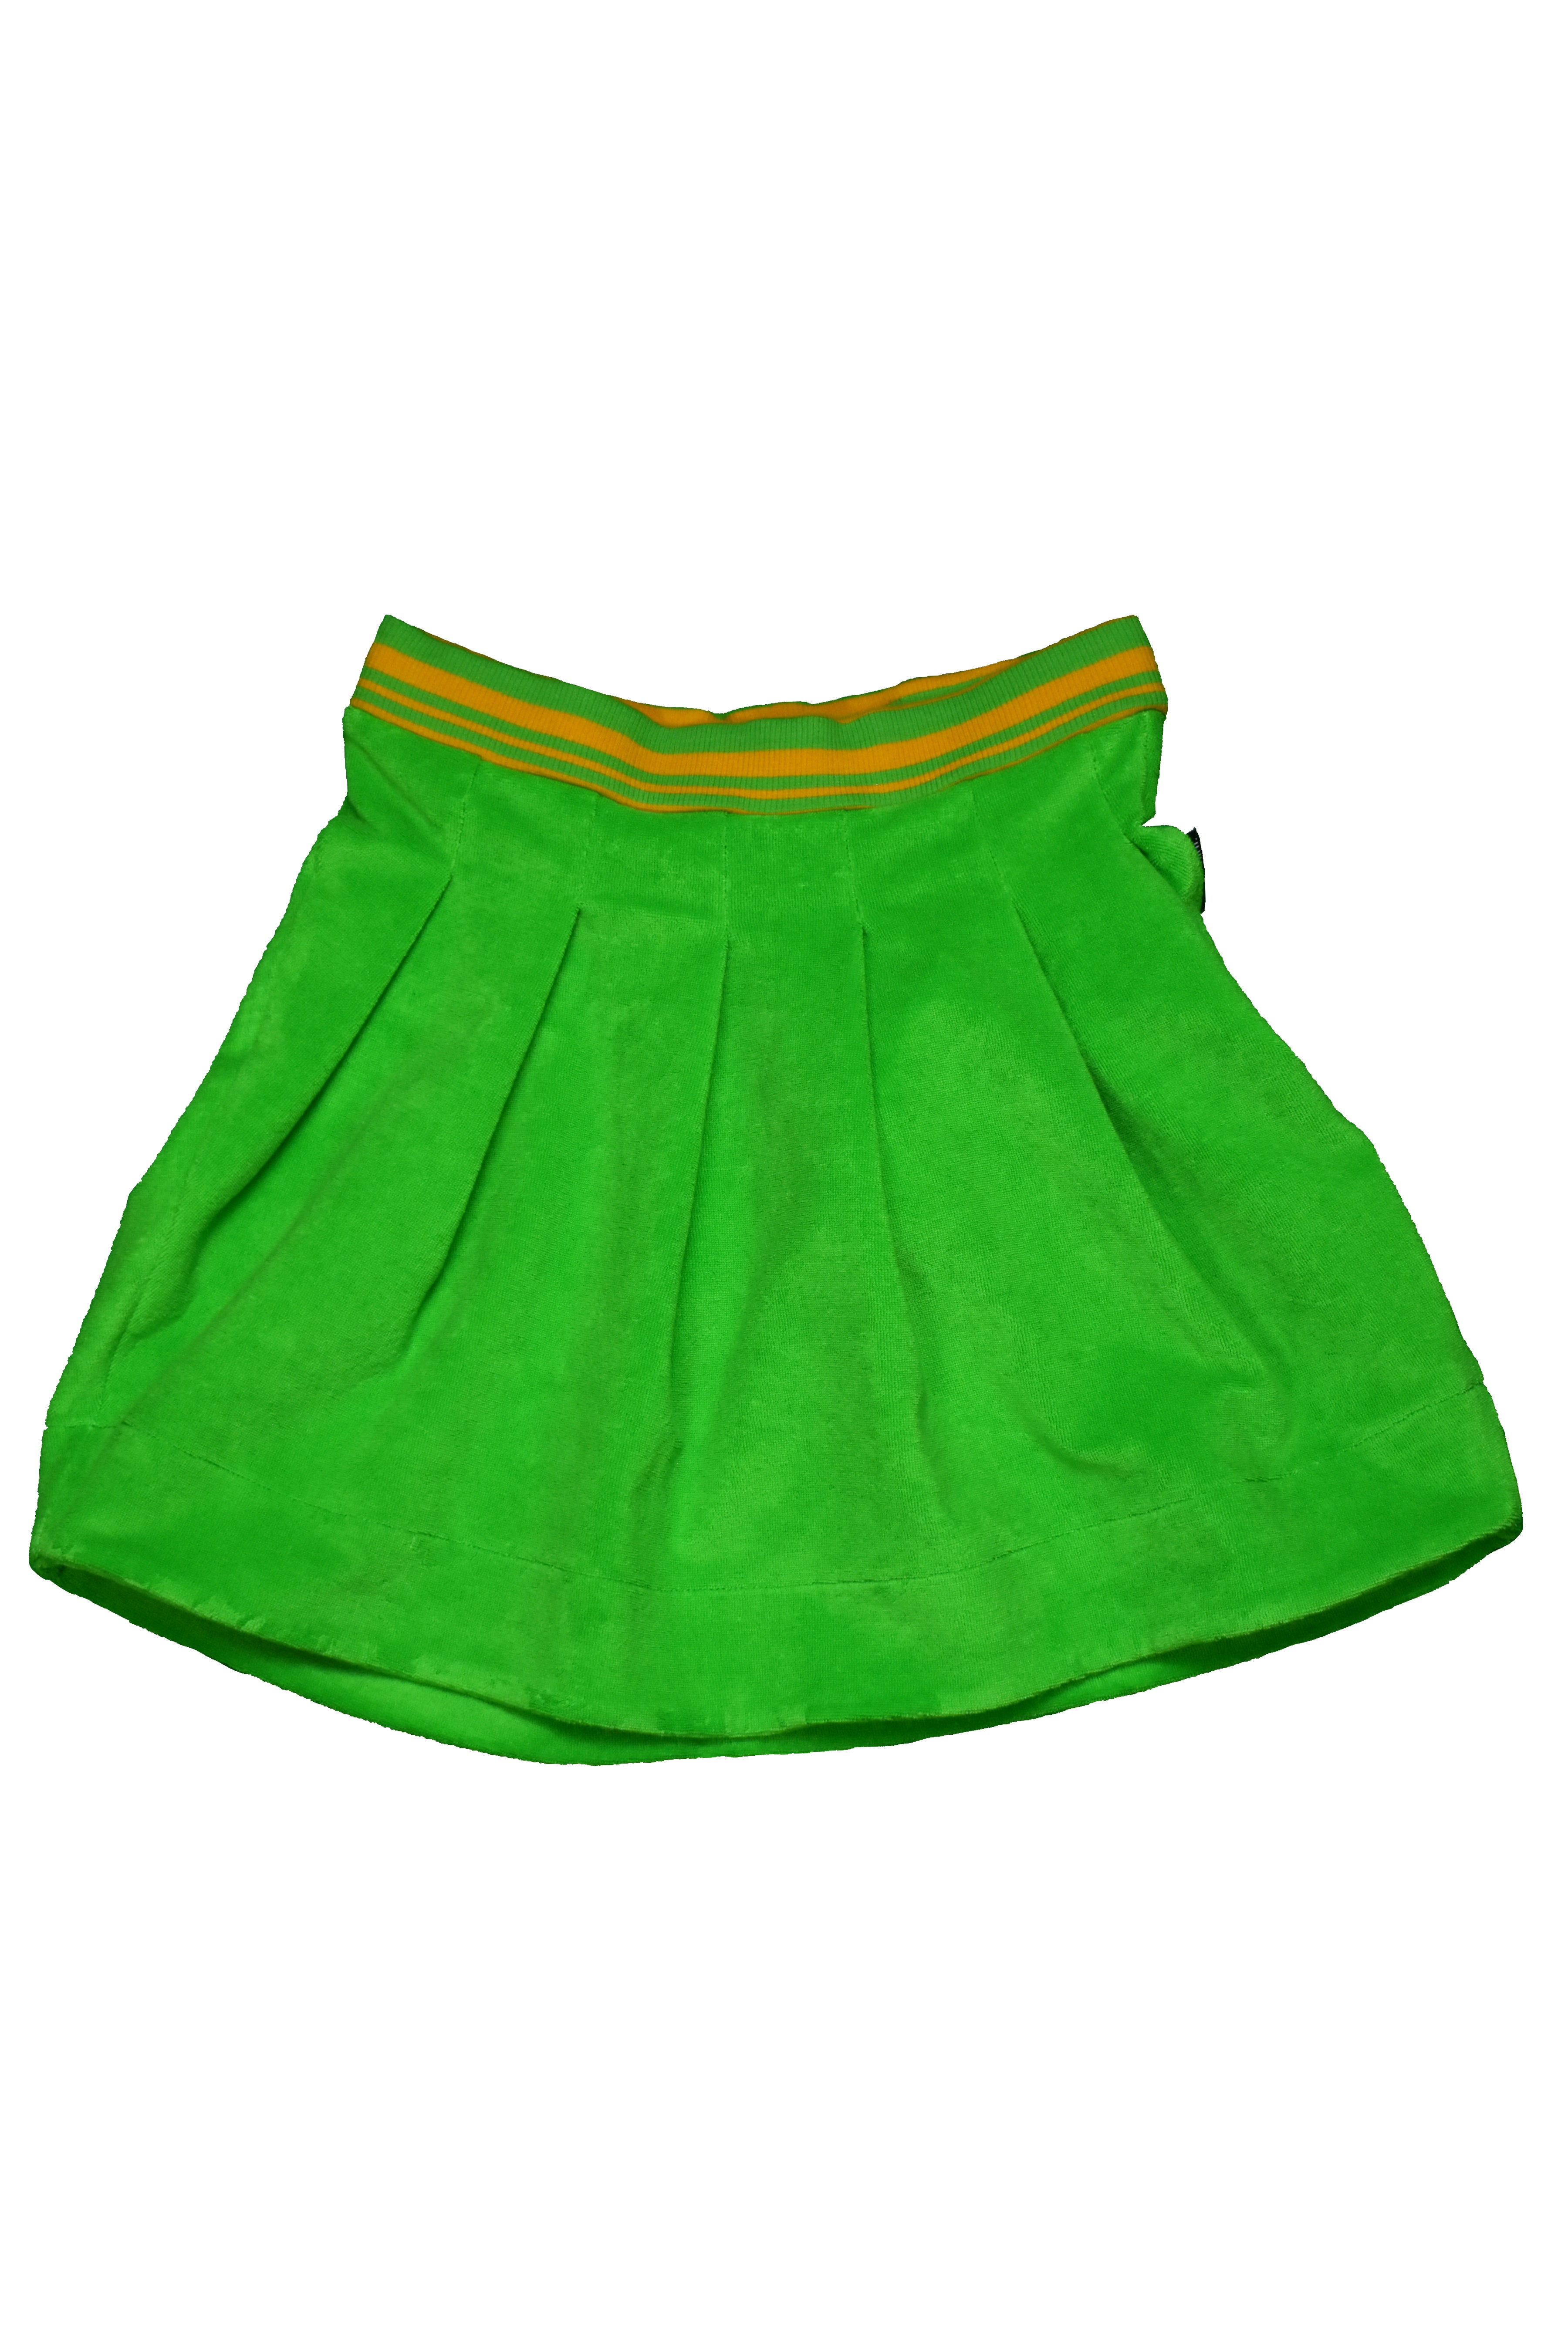 Moromini - Tennis Skirt - Green/Yellow